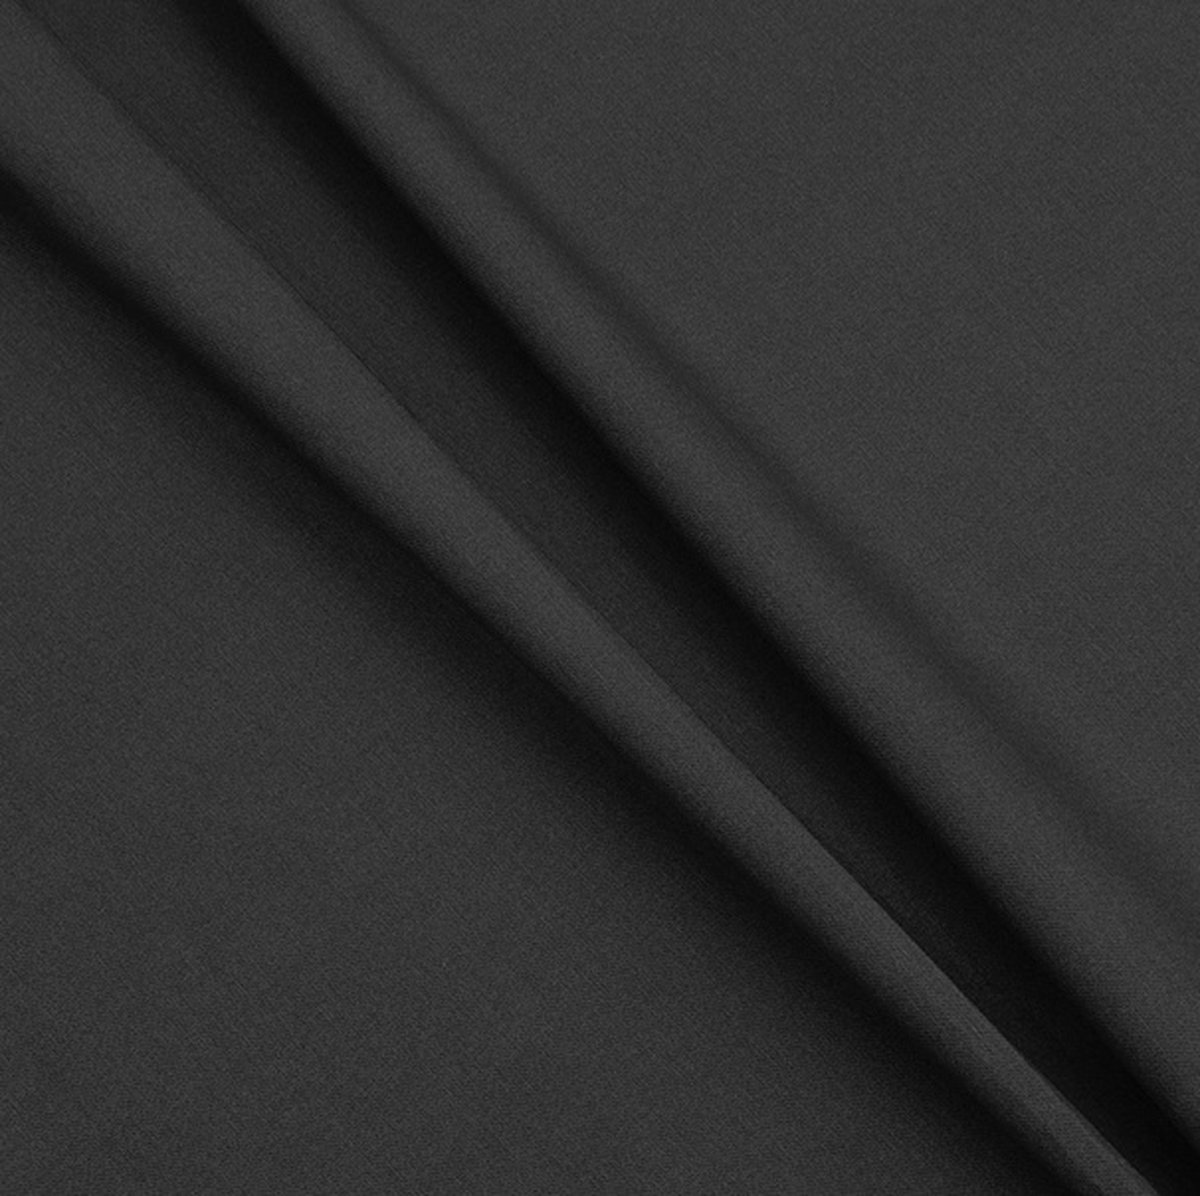 Gecoat tafelkleed/tafellinnen - Afwasbaar - Op koker geleverd - kleur: effen zwart - 350x140cm